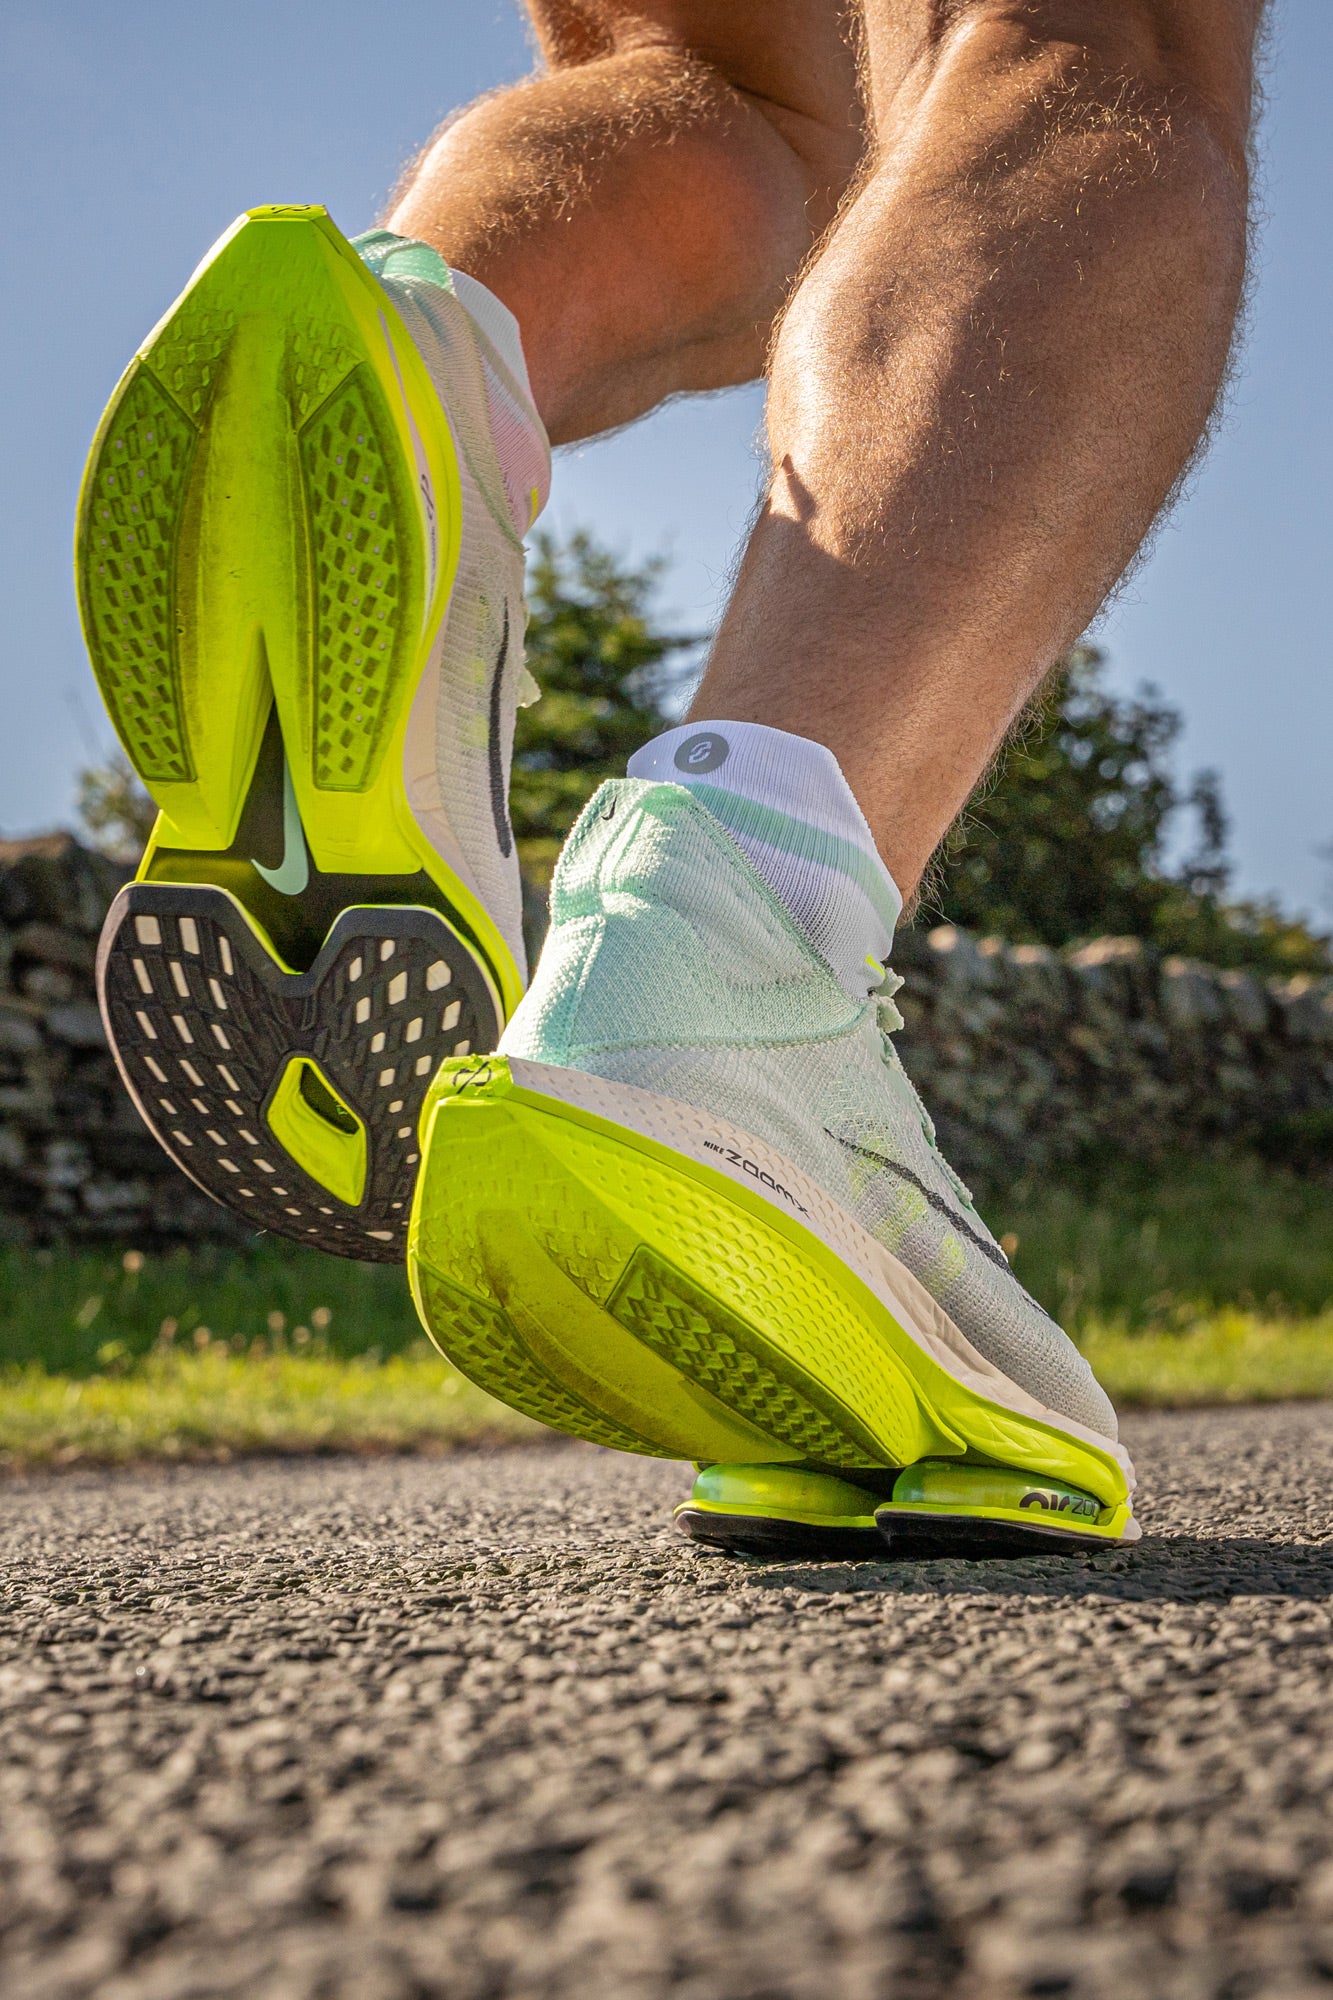 Nike mint running socks on runner